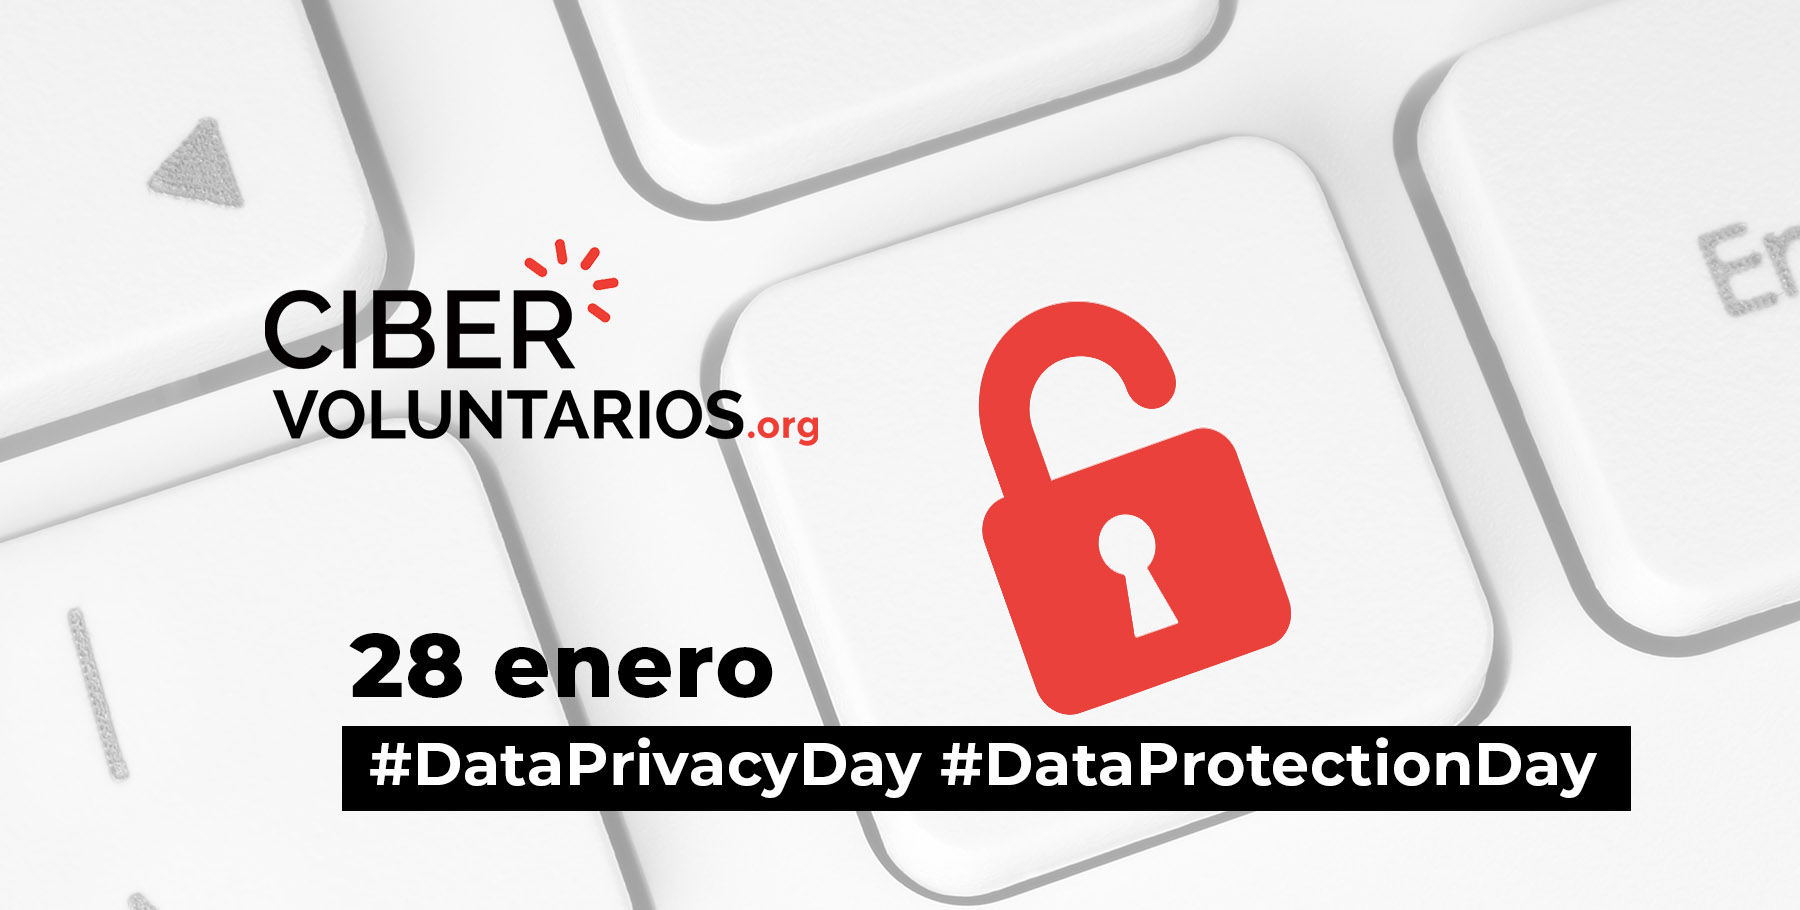 Alianzas globales de Cibervoluntarios.org por el Día de la Protección de Datos